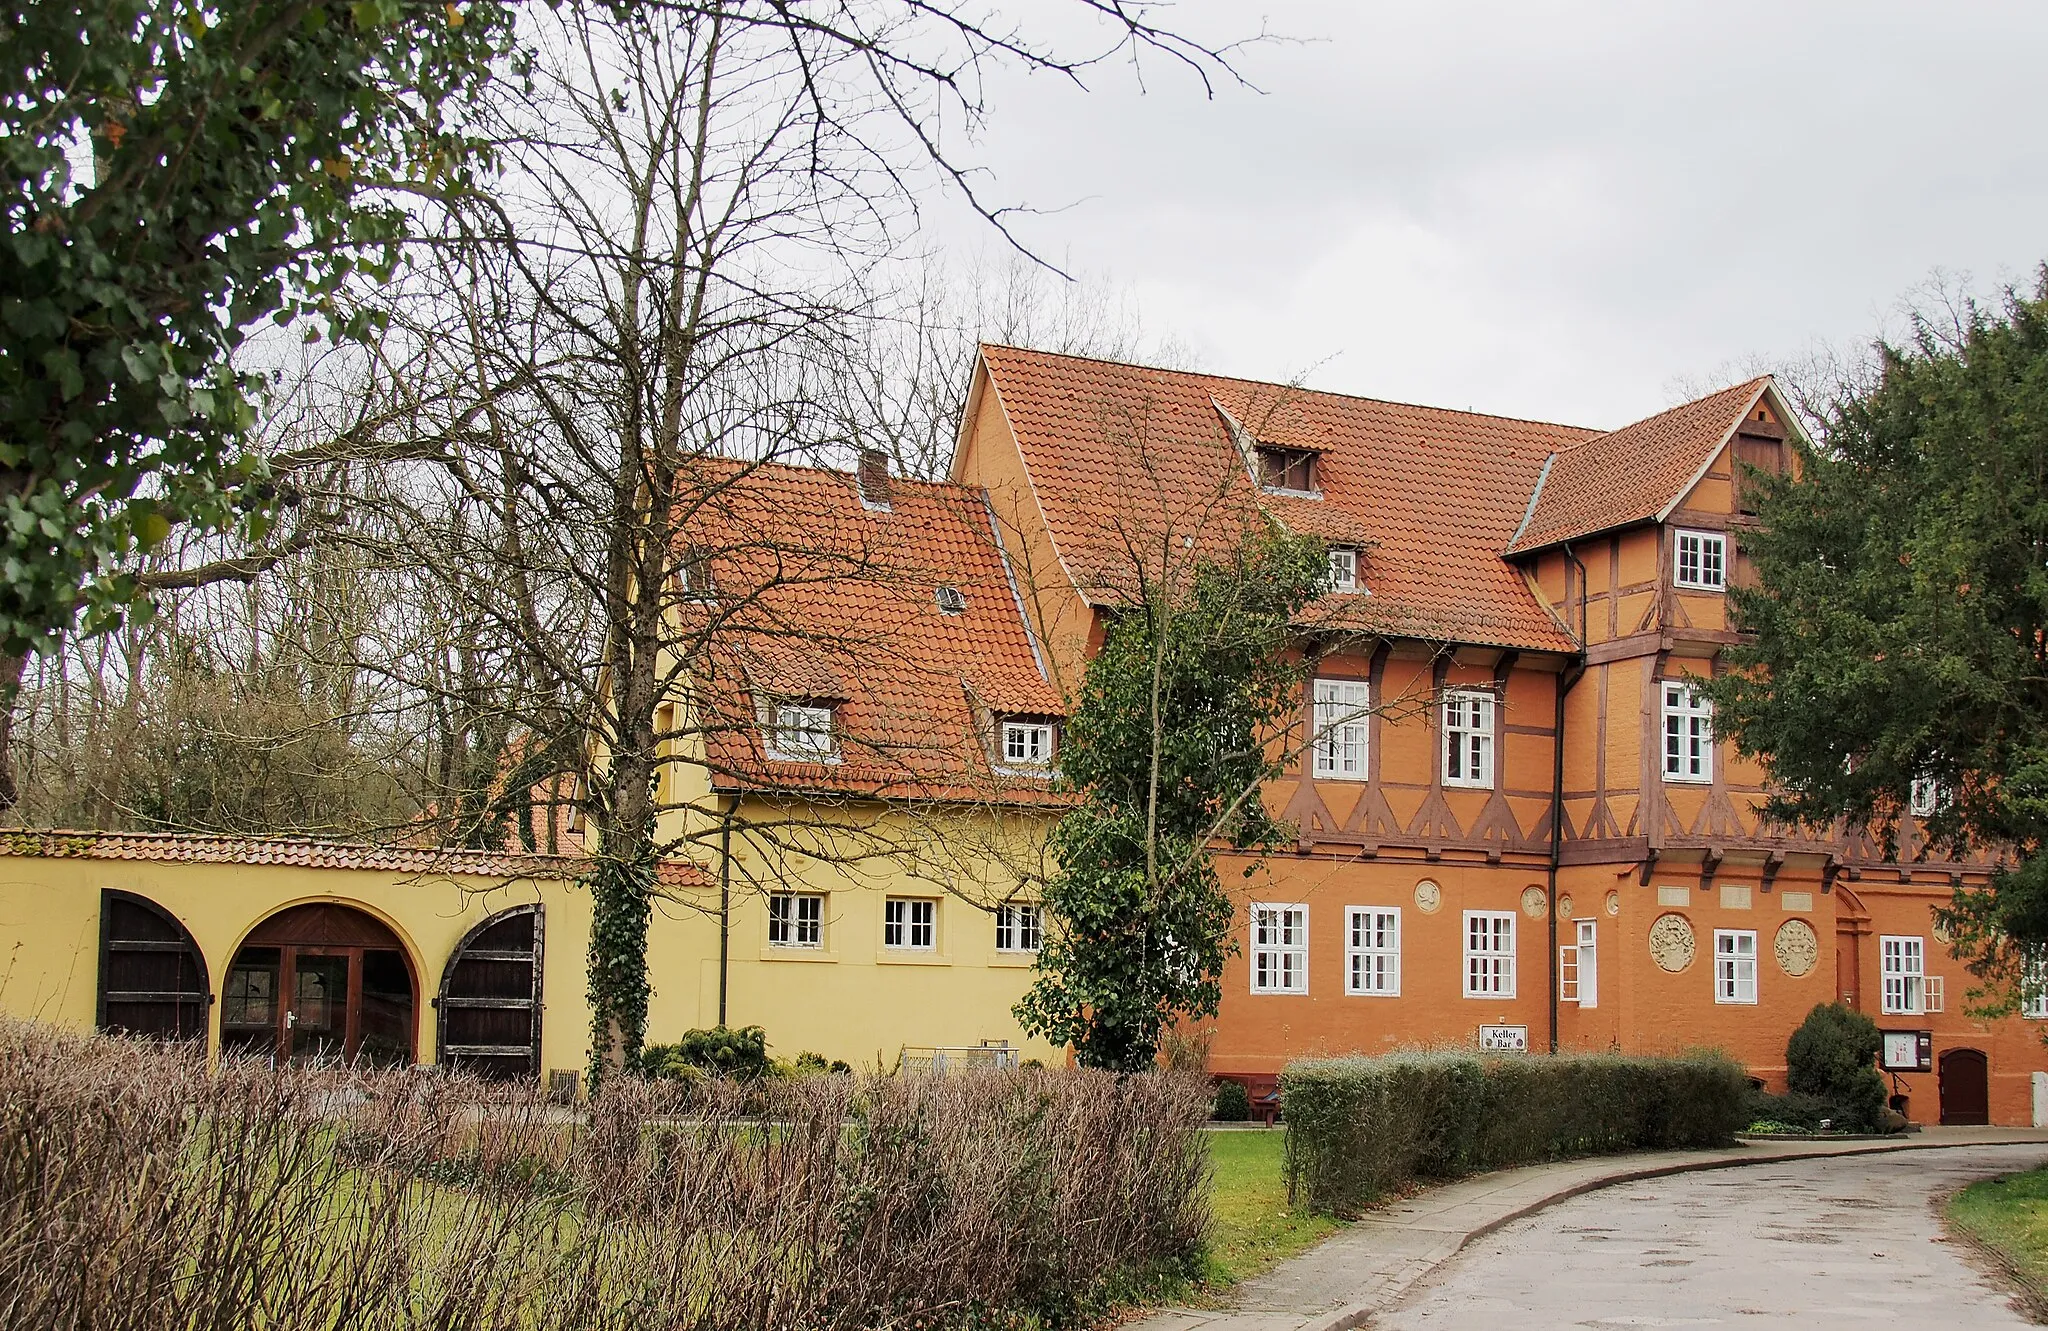 Photo showing: Ehemaliges Amtsgerichtsgebäude von 1541, Klosterweg 4 in Medingen, Bad Bevensen, jetzt Teil des Gustav Stresemann Instituts